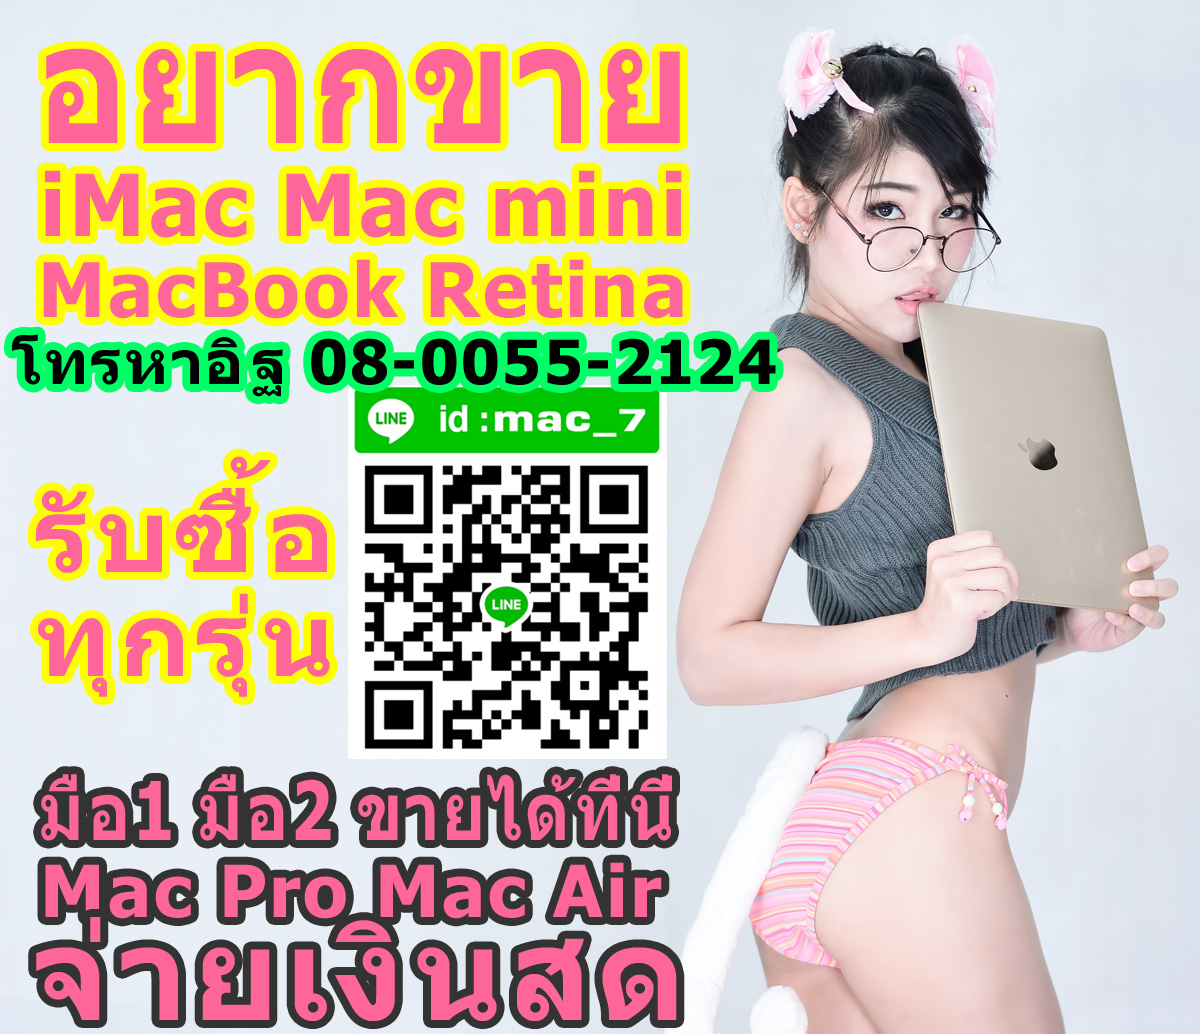 แมคบุ้คเสีย แมคบุ้คค้าง แมคบุ้คดับ แมคบุ้คร้อน แมคบุ๊คใช้งานไม่ได้ ขายได้ รับซื้อ mac ทุกสภาพ อิฐ Add Line mac_7 รูปที่ 1